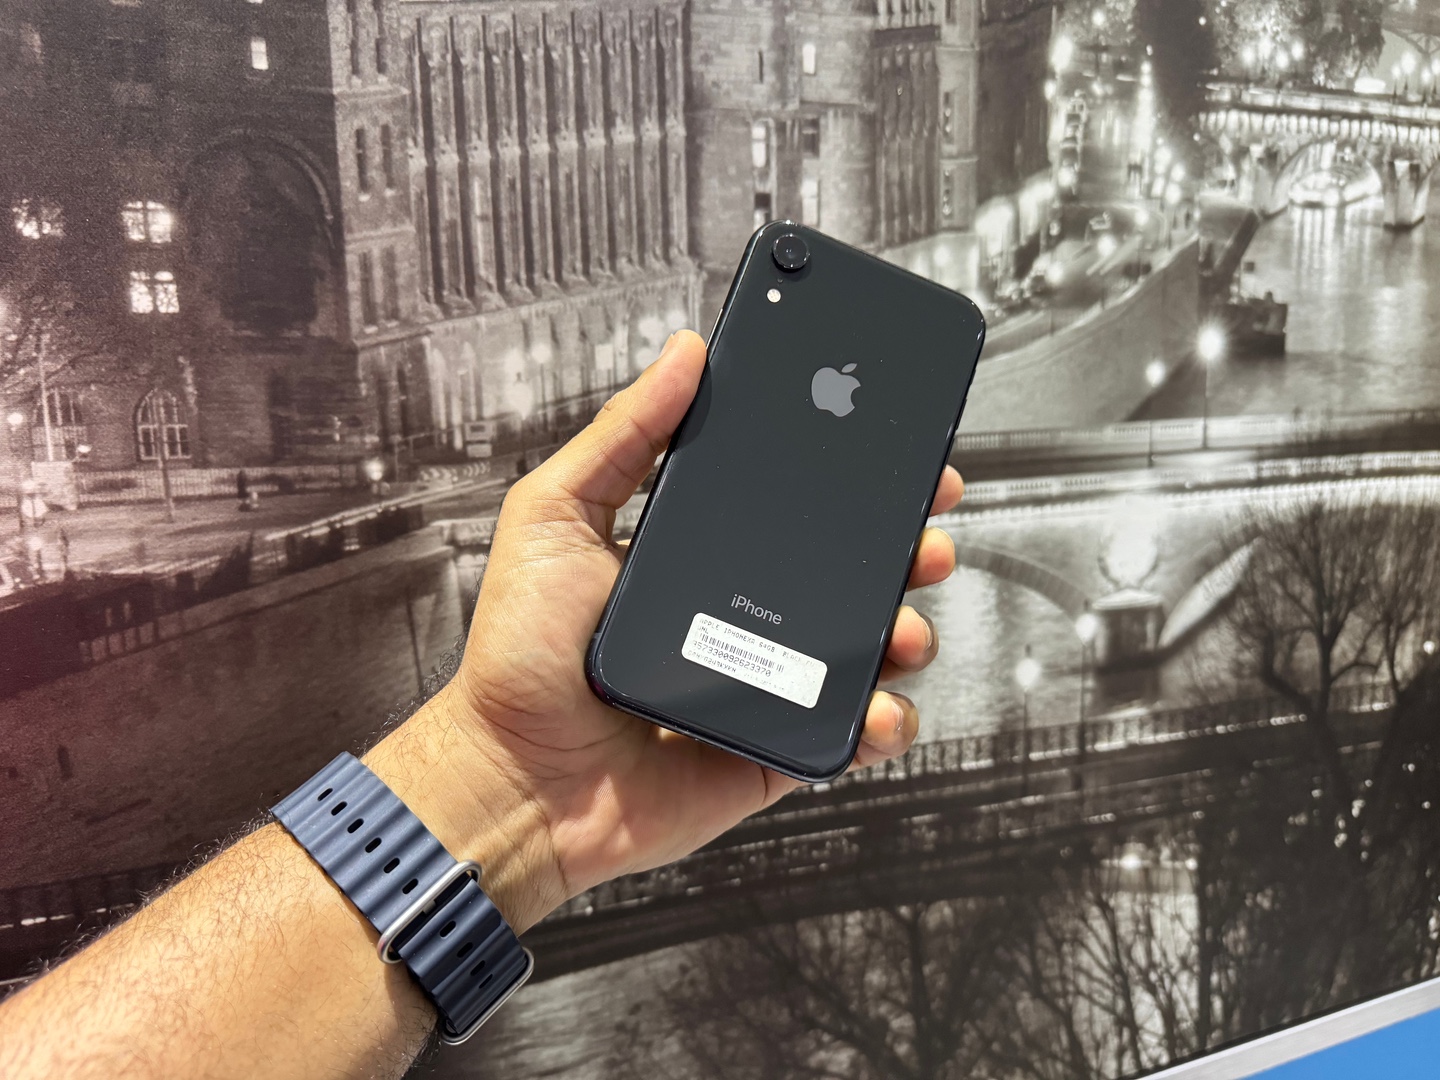 celulares y tabletas - iPhone XR 64GB Negro impecable Condiciones, Desbloqueado, Garantia, $ 11,900 NEG 0